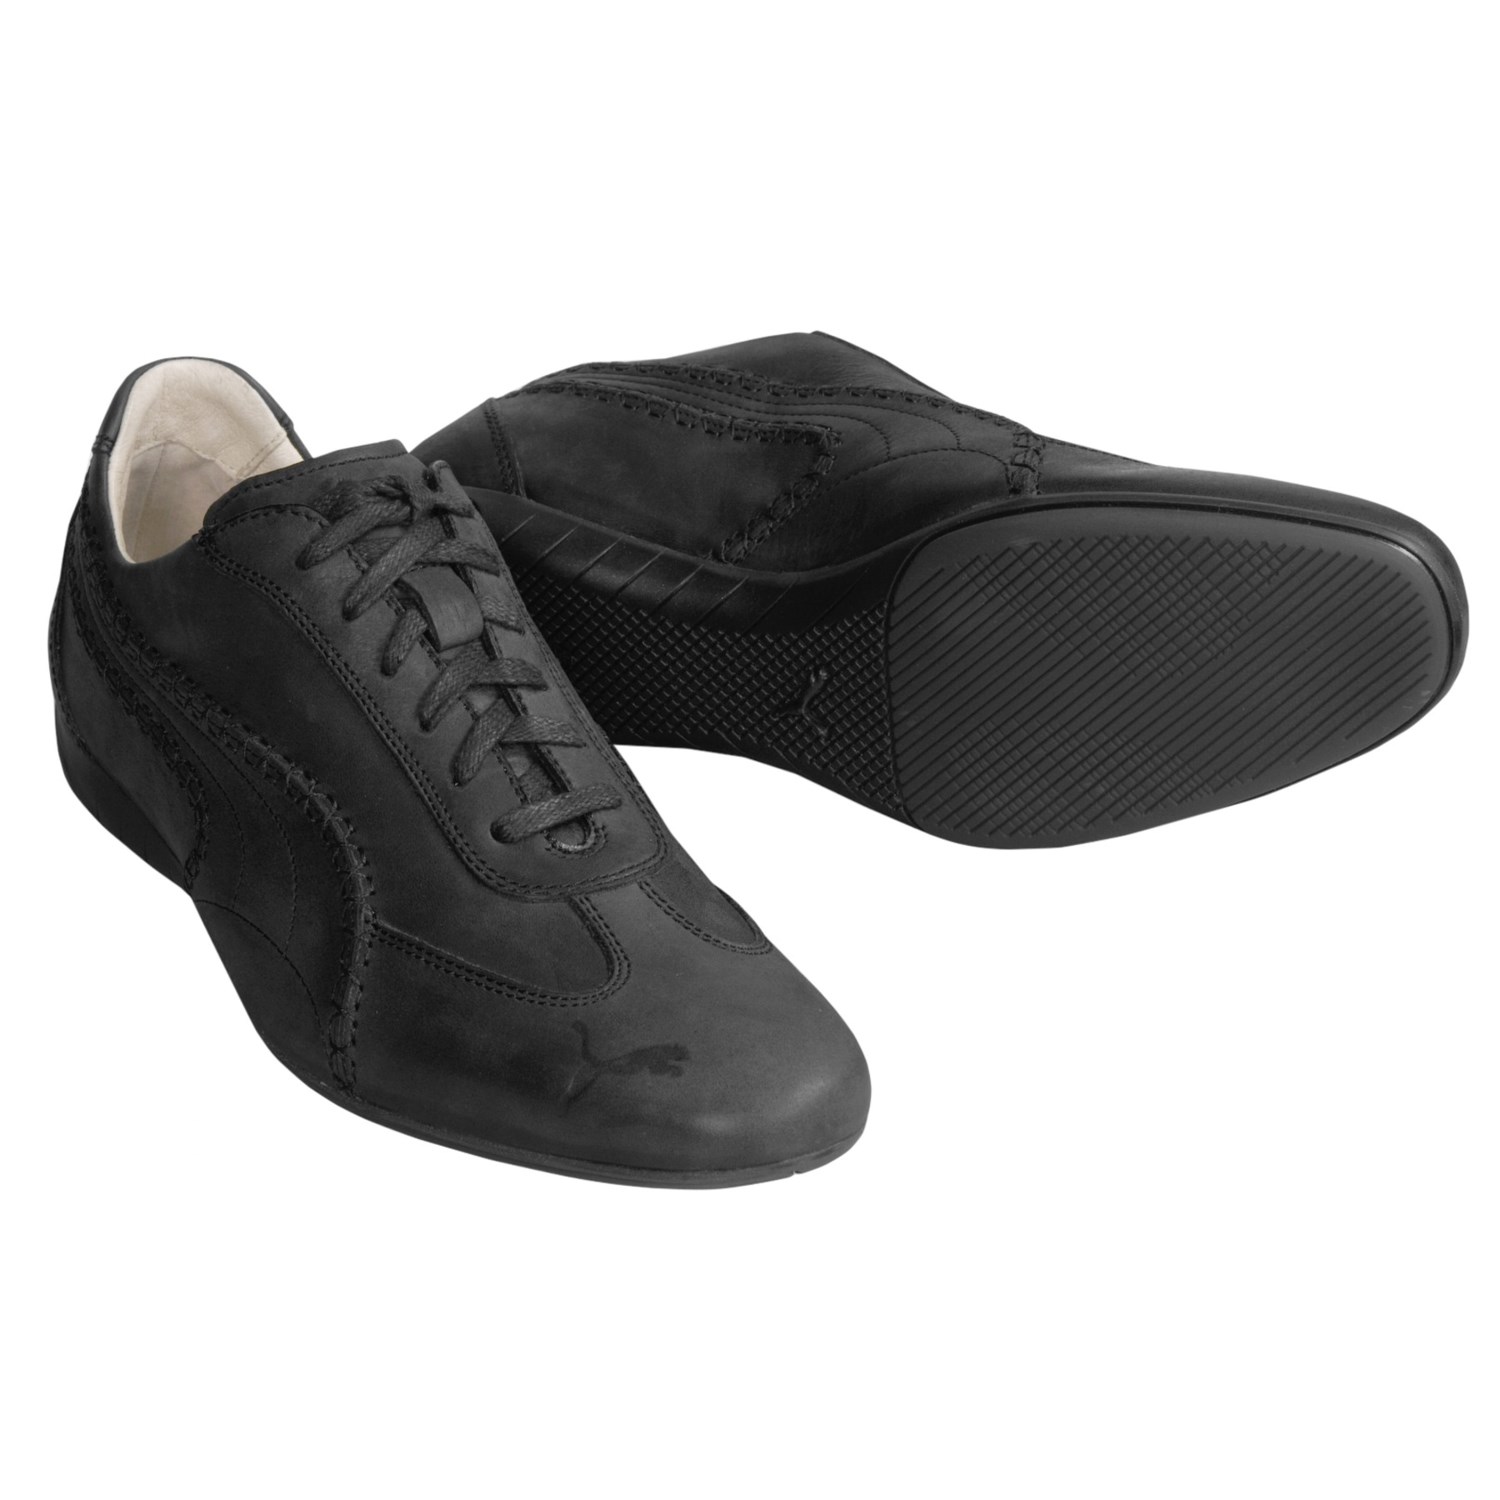 puma black label shoes